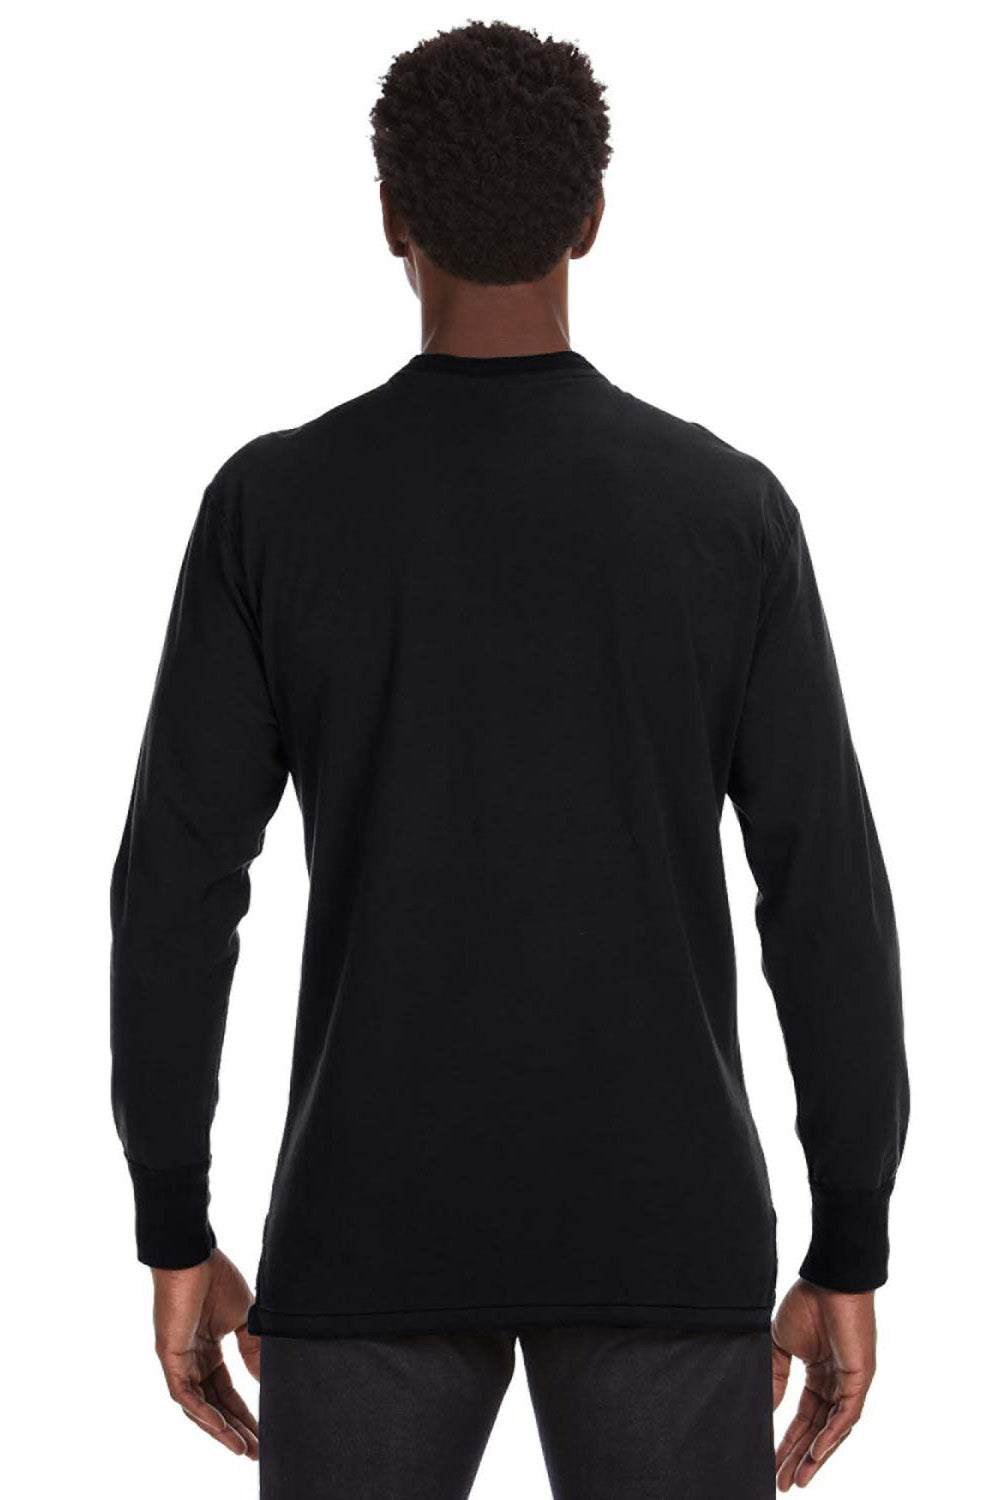 J America JA8244 Mens Vintage Brushed Jersey Long Sleeve Henley T-Shirt Black Back